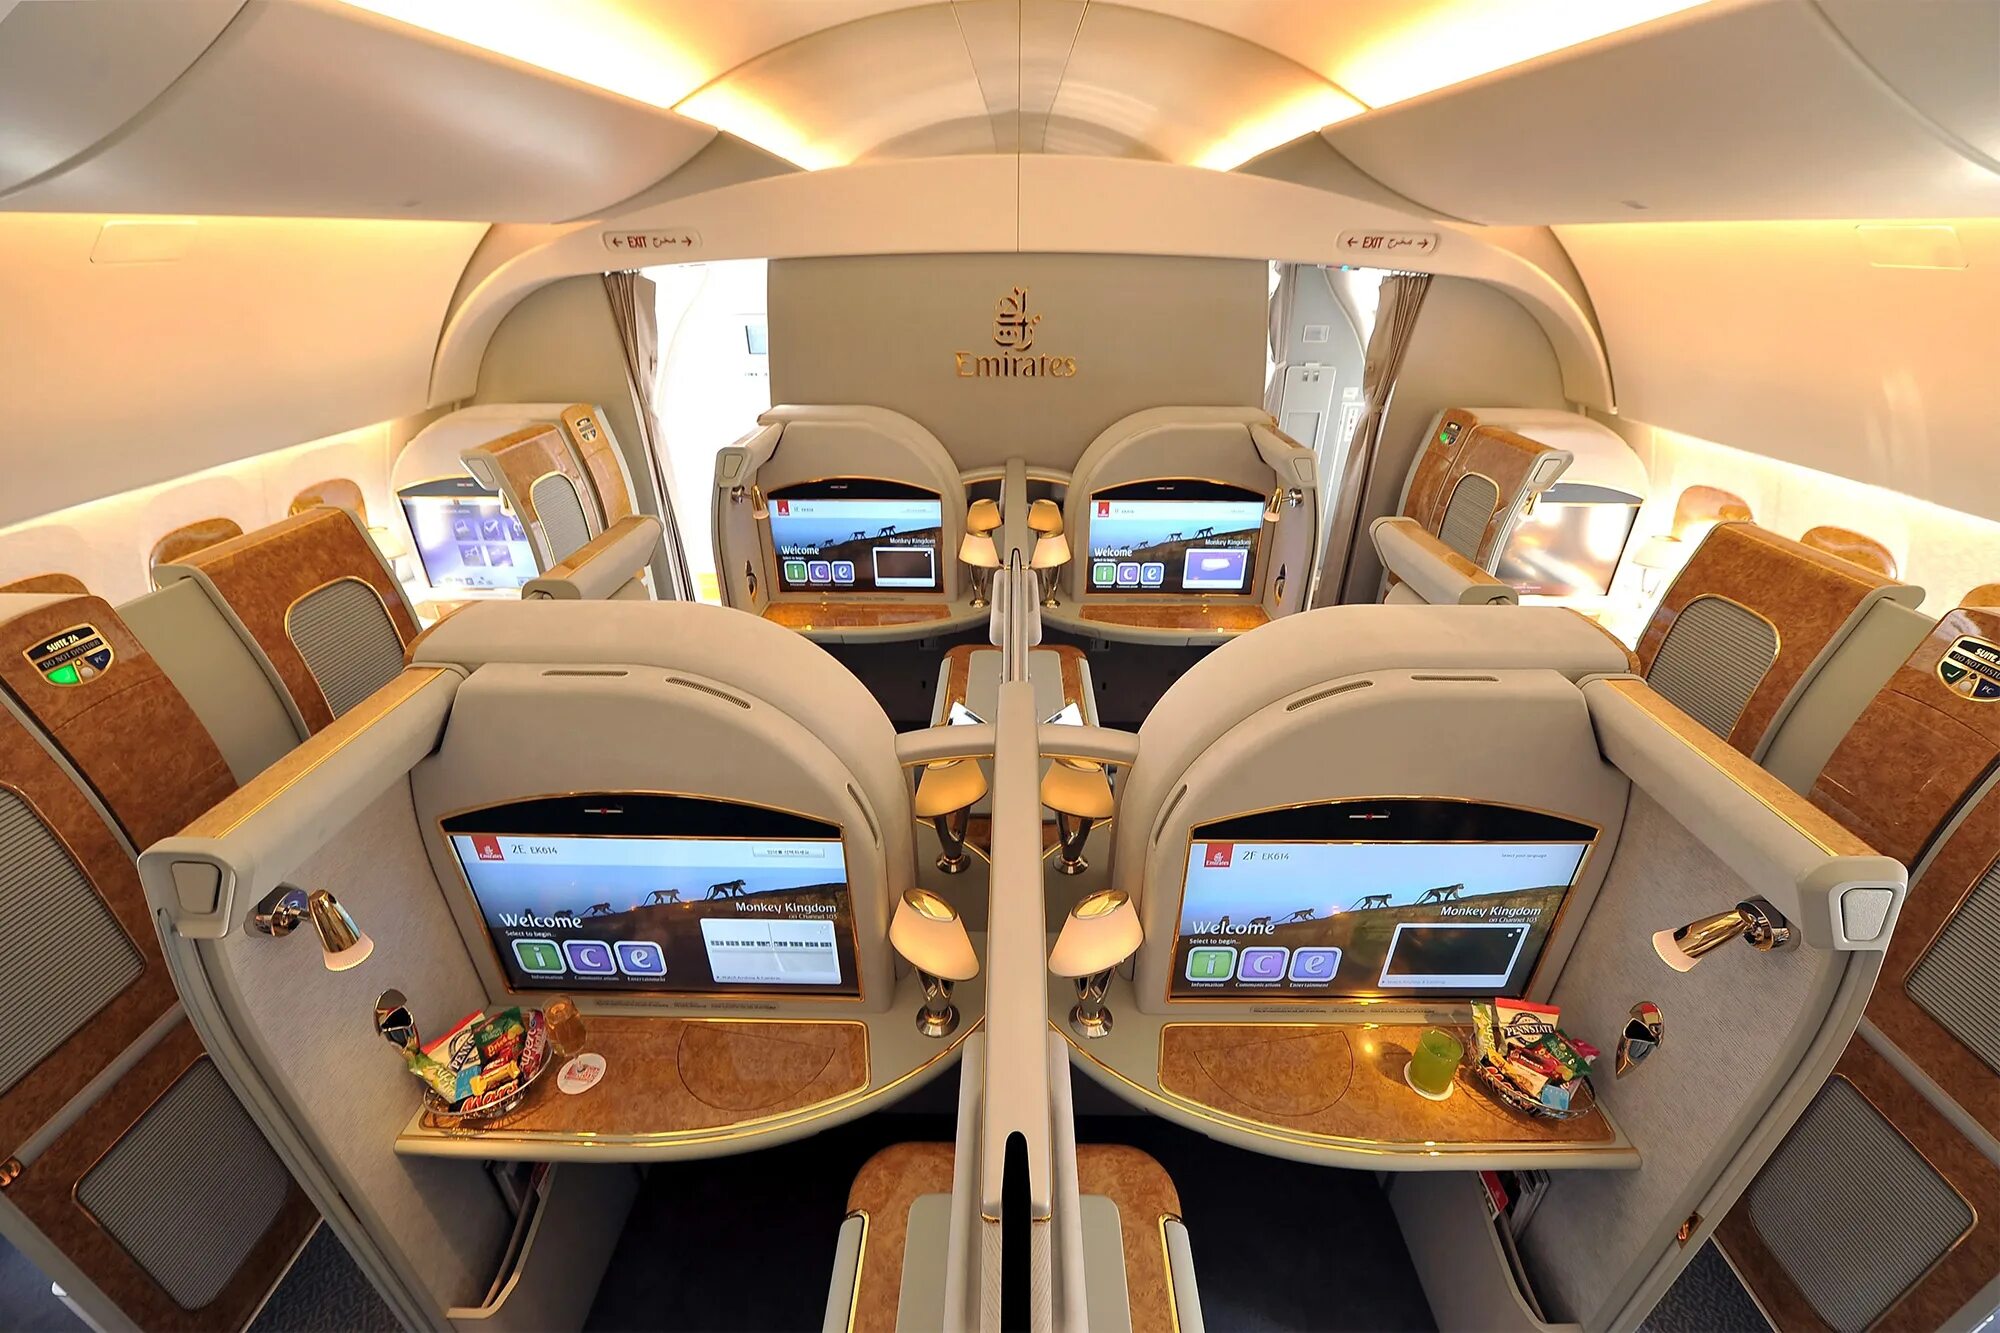 First class going first class. Airbus a380 Emirates первый класс. Самолет Emirates a380 салон. Airbus a380 Emirates салон. Первый класс Emirates a380.